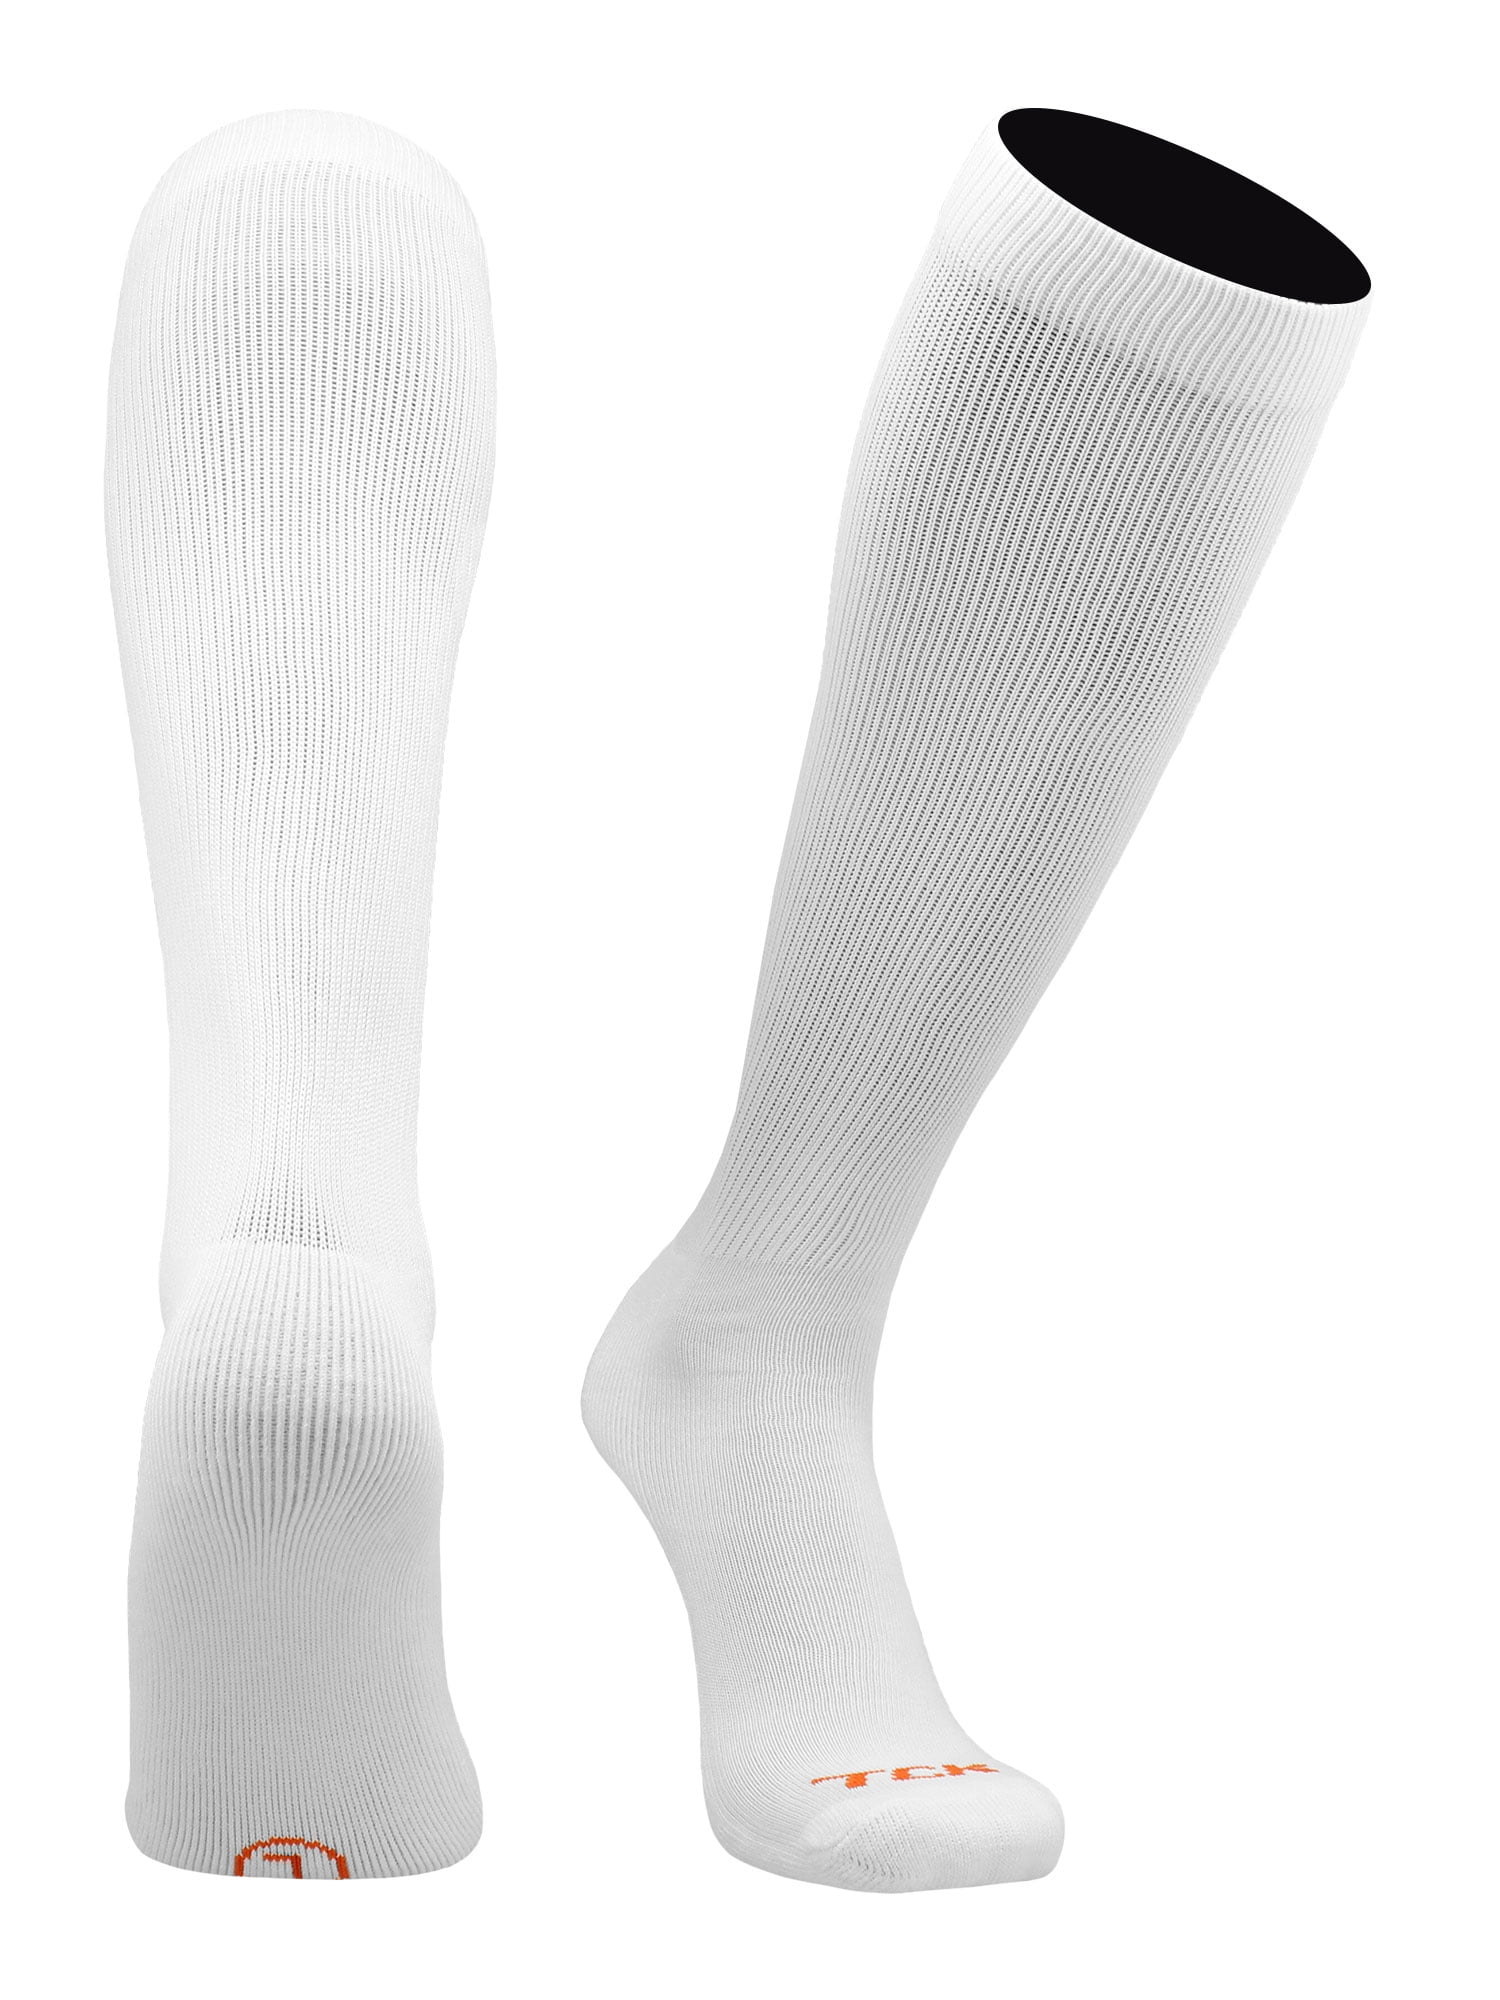 Pro Line Over the Calf Football Socks (White, Medium)